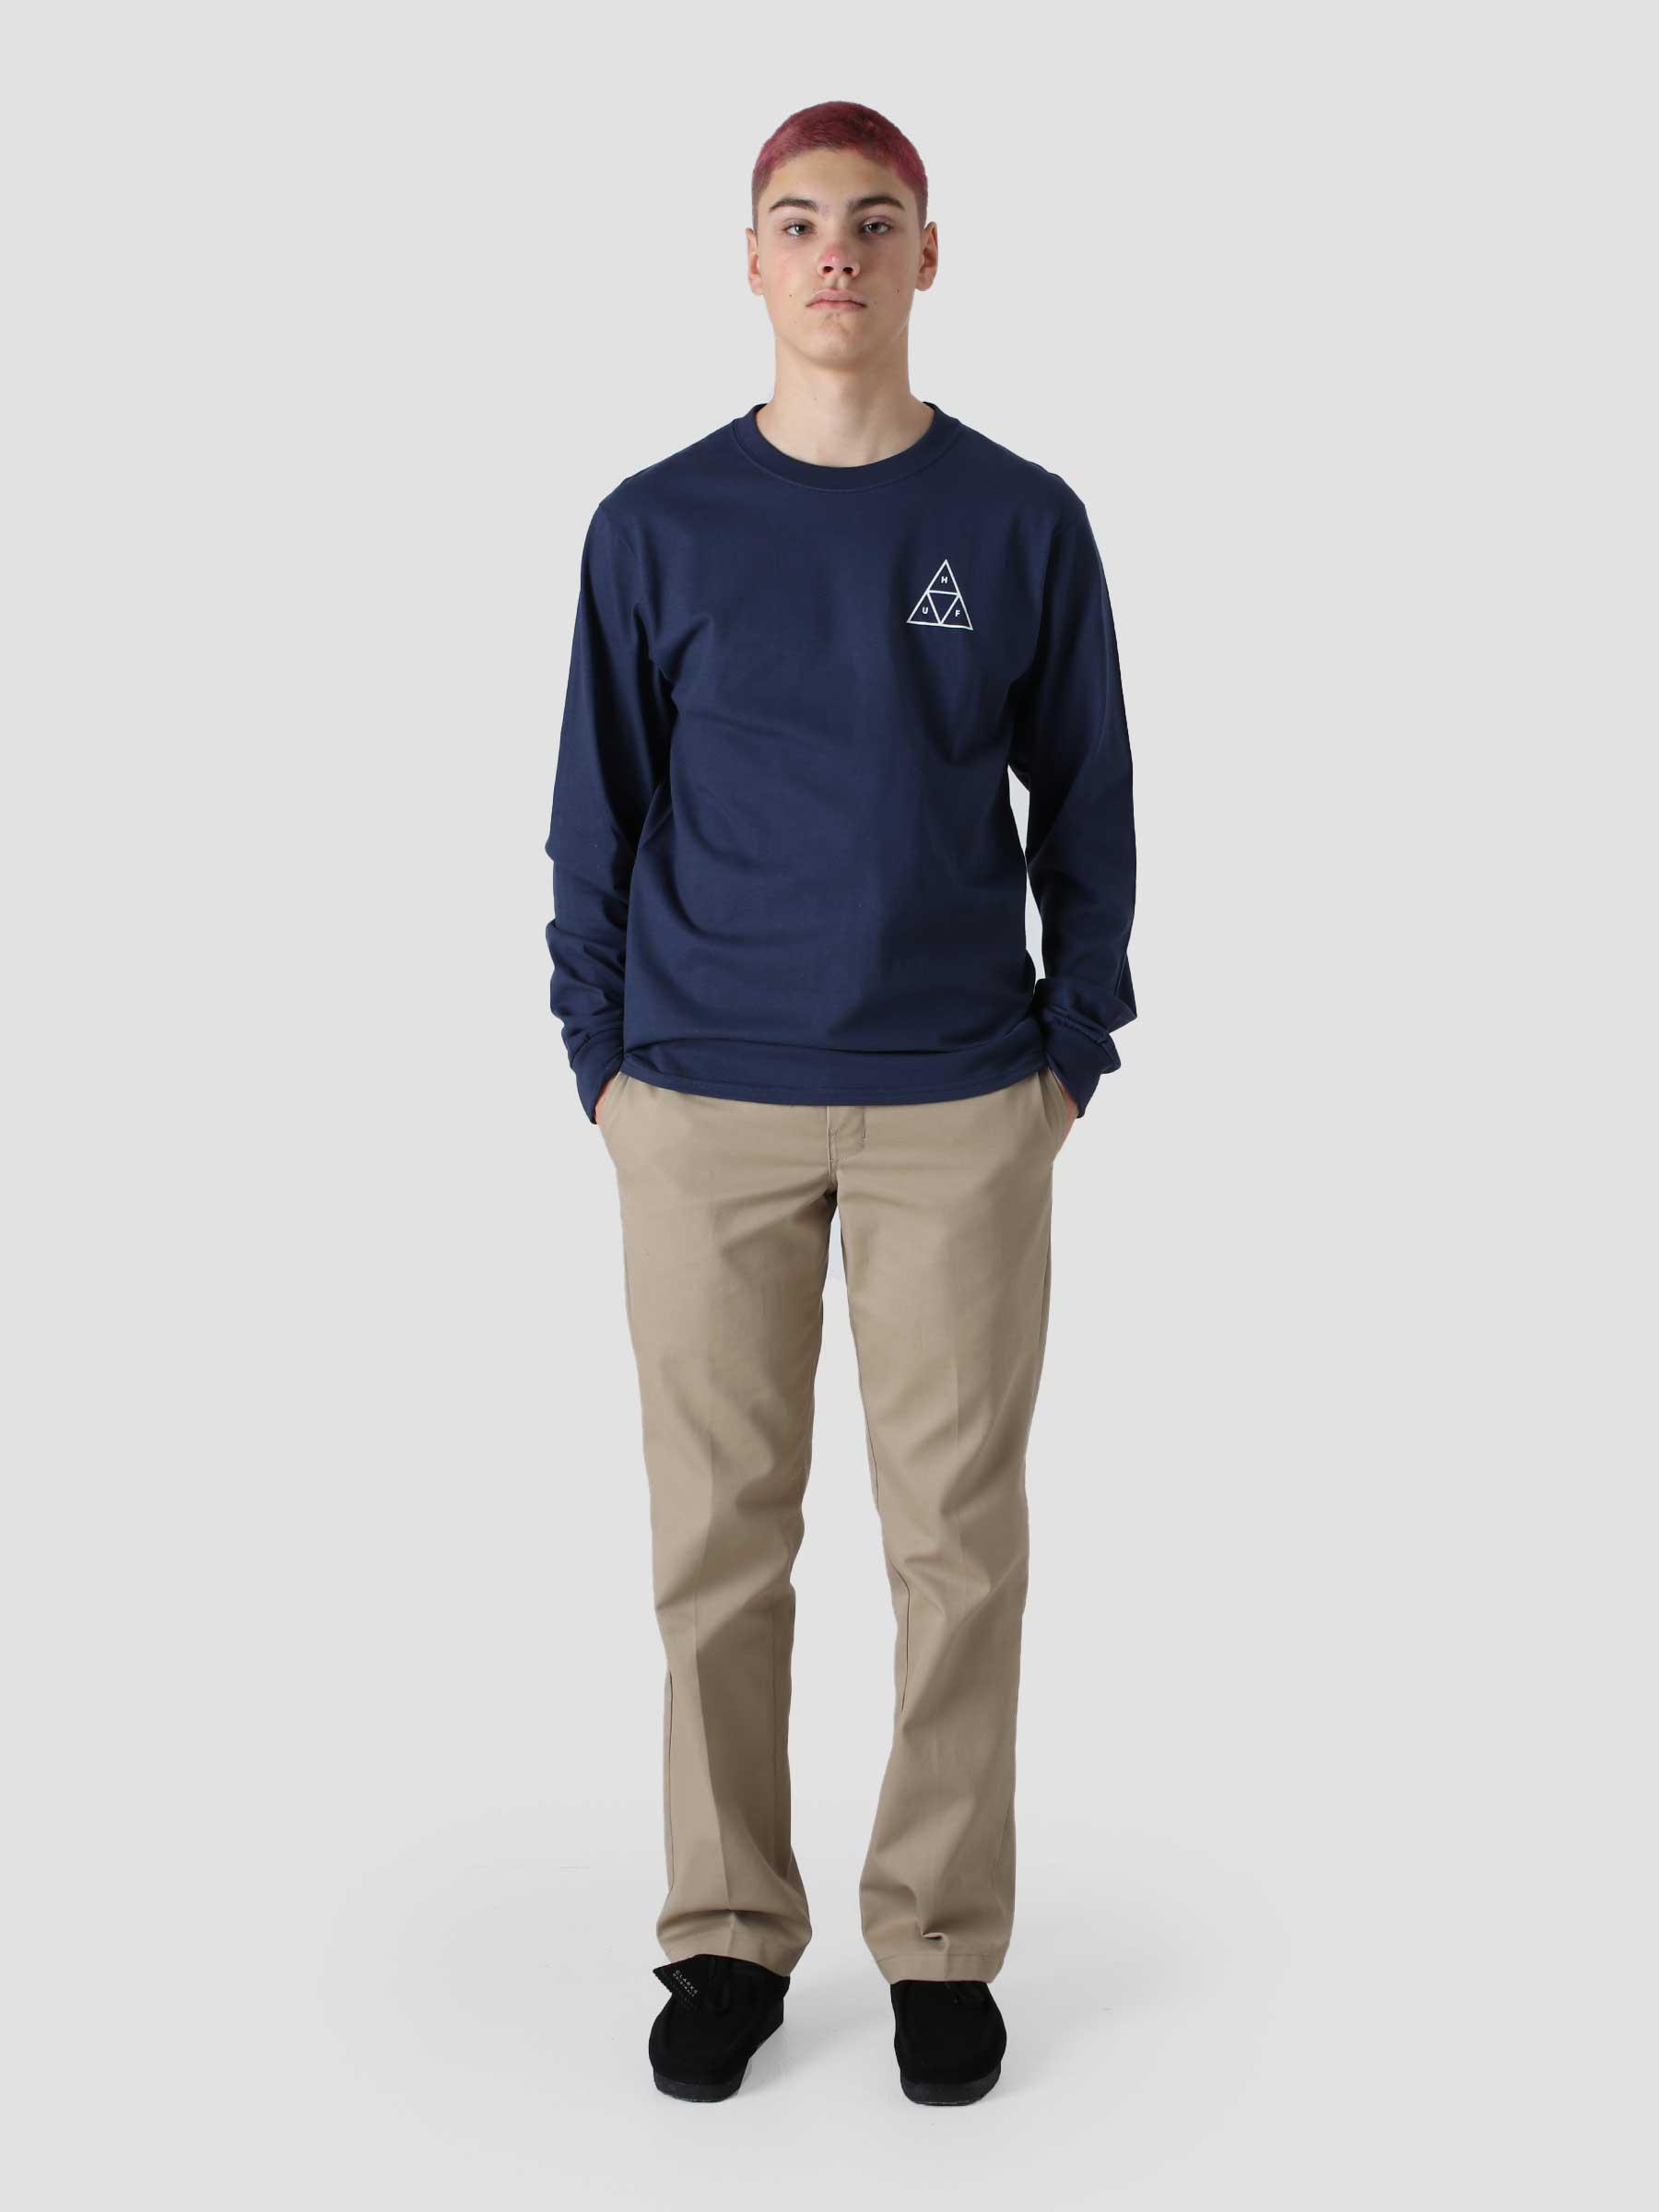 Essential Tt Longsleeve T-Shirt Navy TS01546